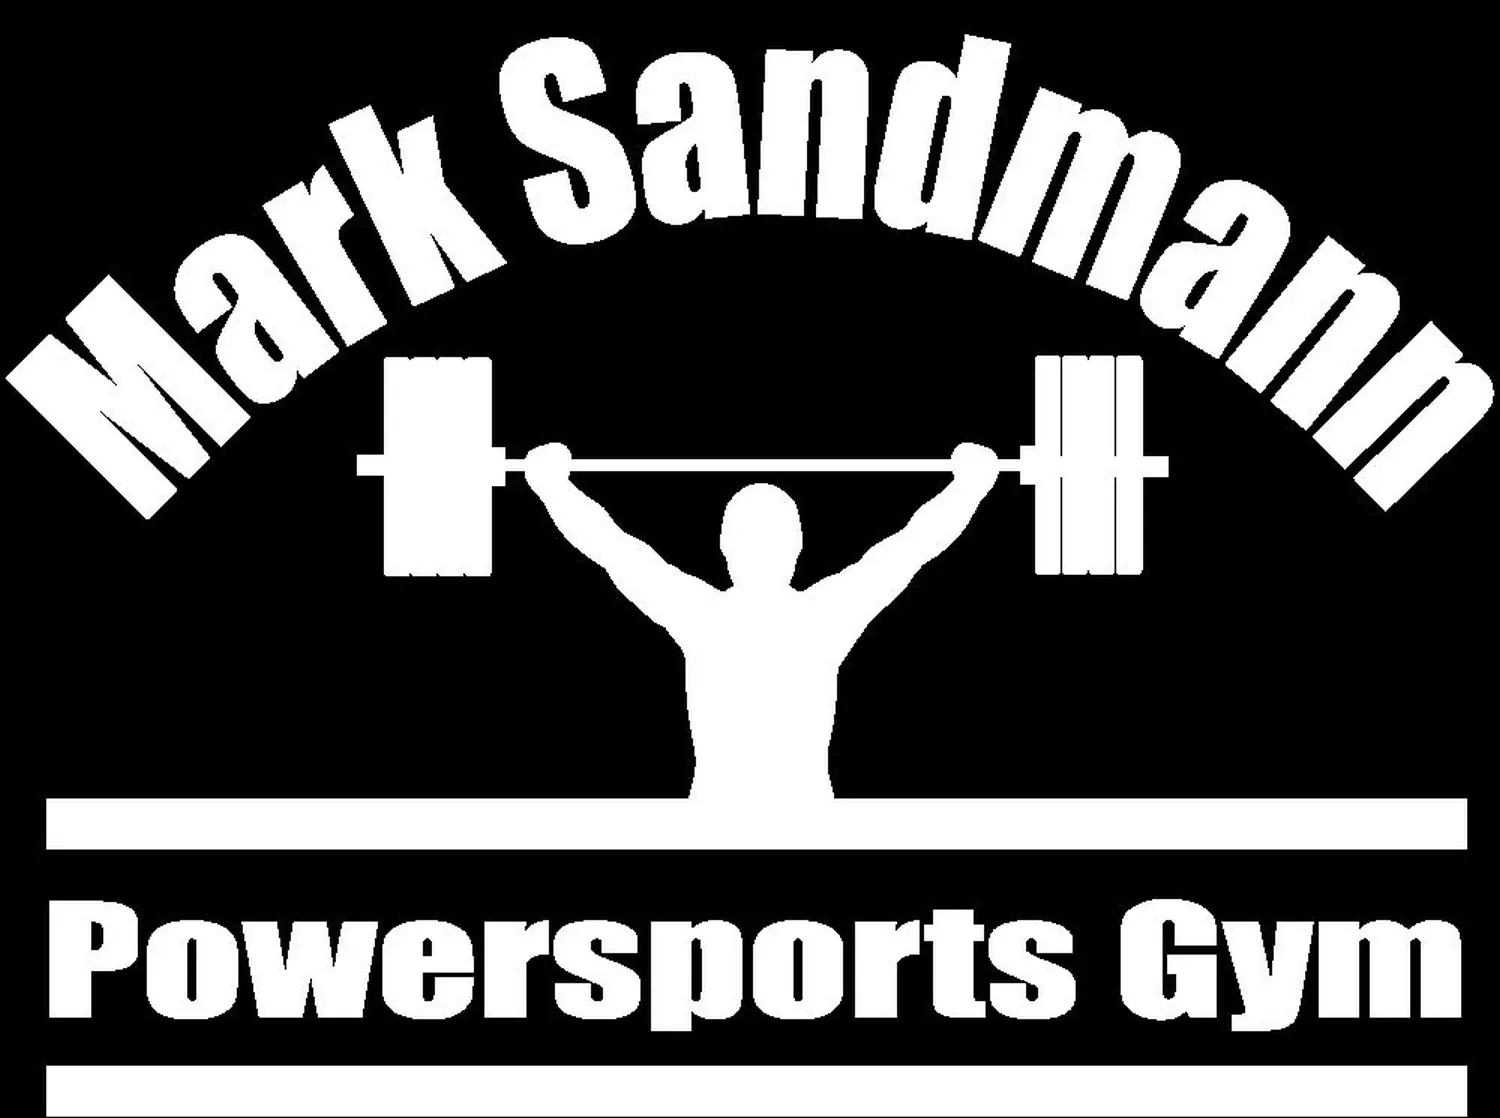 Mark Sandmsnn logo